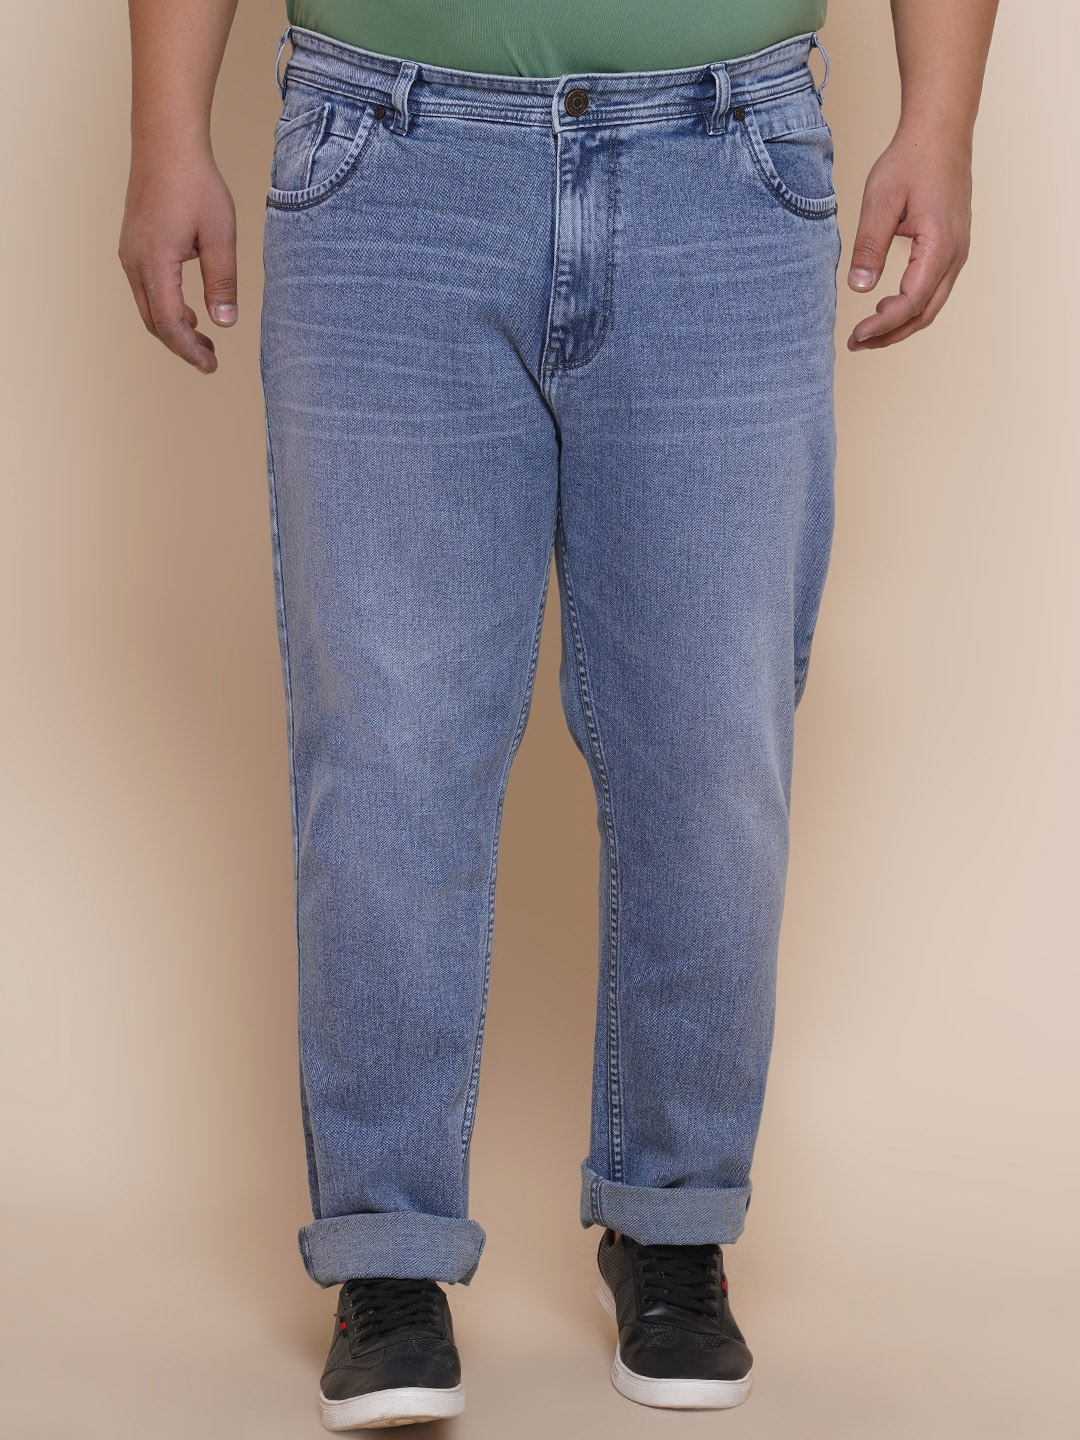 bottomwear/jeans/EJPJ25081/ejpj25081-1.jpg